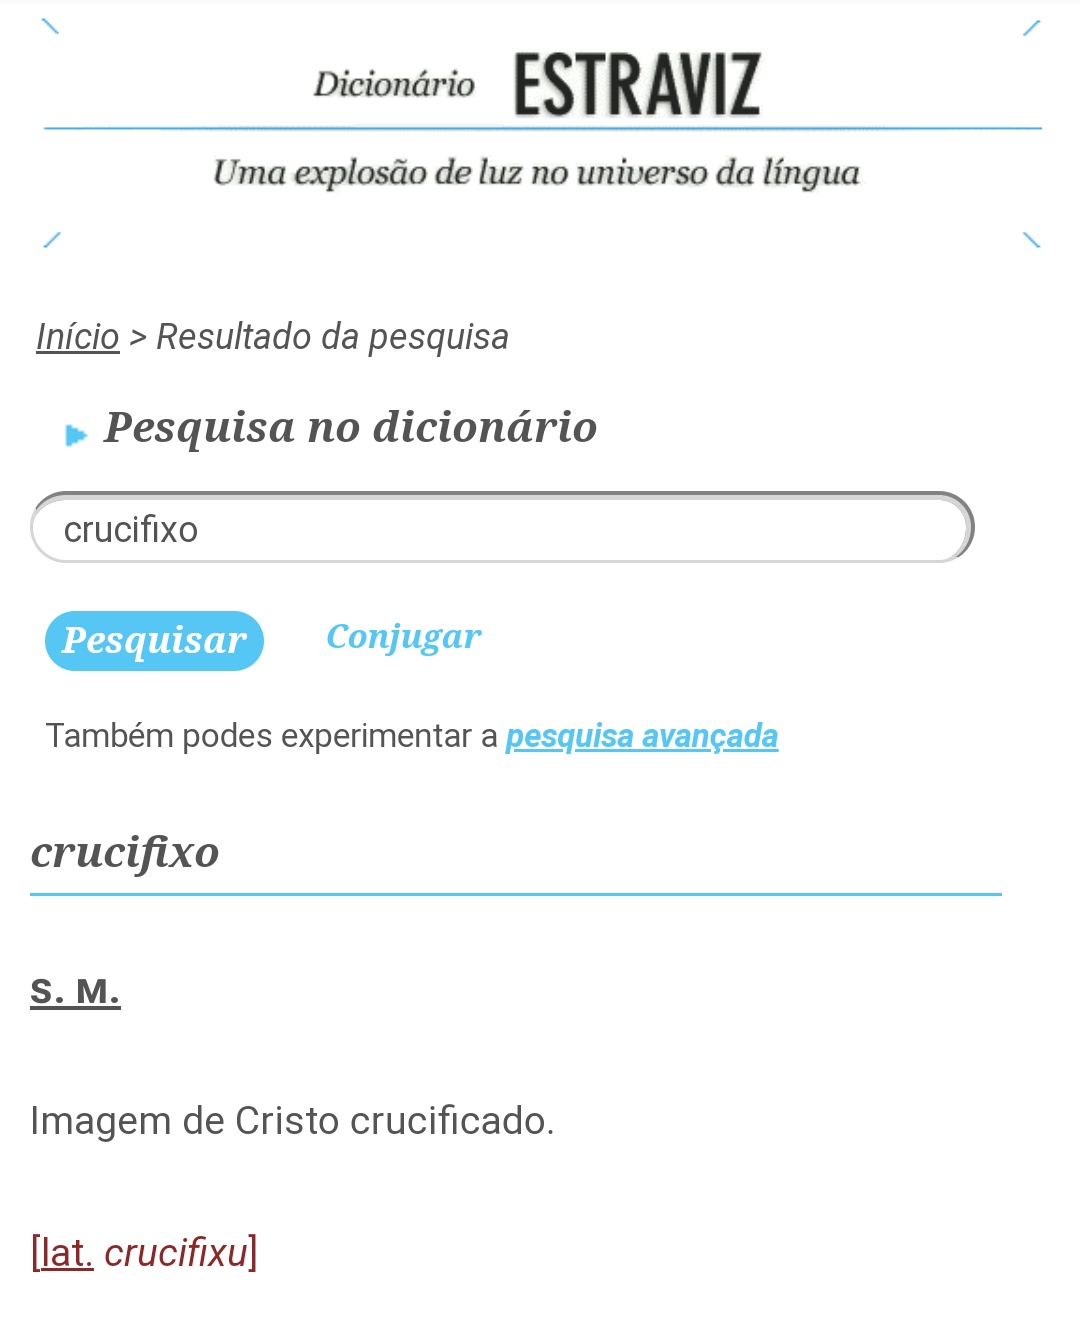 emgalego (AGAL's version) on X: @rexubeiras Em galego internacional é  CRUCIFIXO, com o X lido /ks/. A grafia *crucifijo nom é etimológica. No  mesmo castelhano era escrito crucifixo até a reforma que